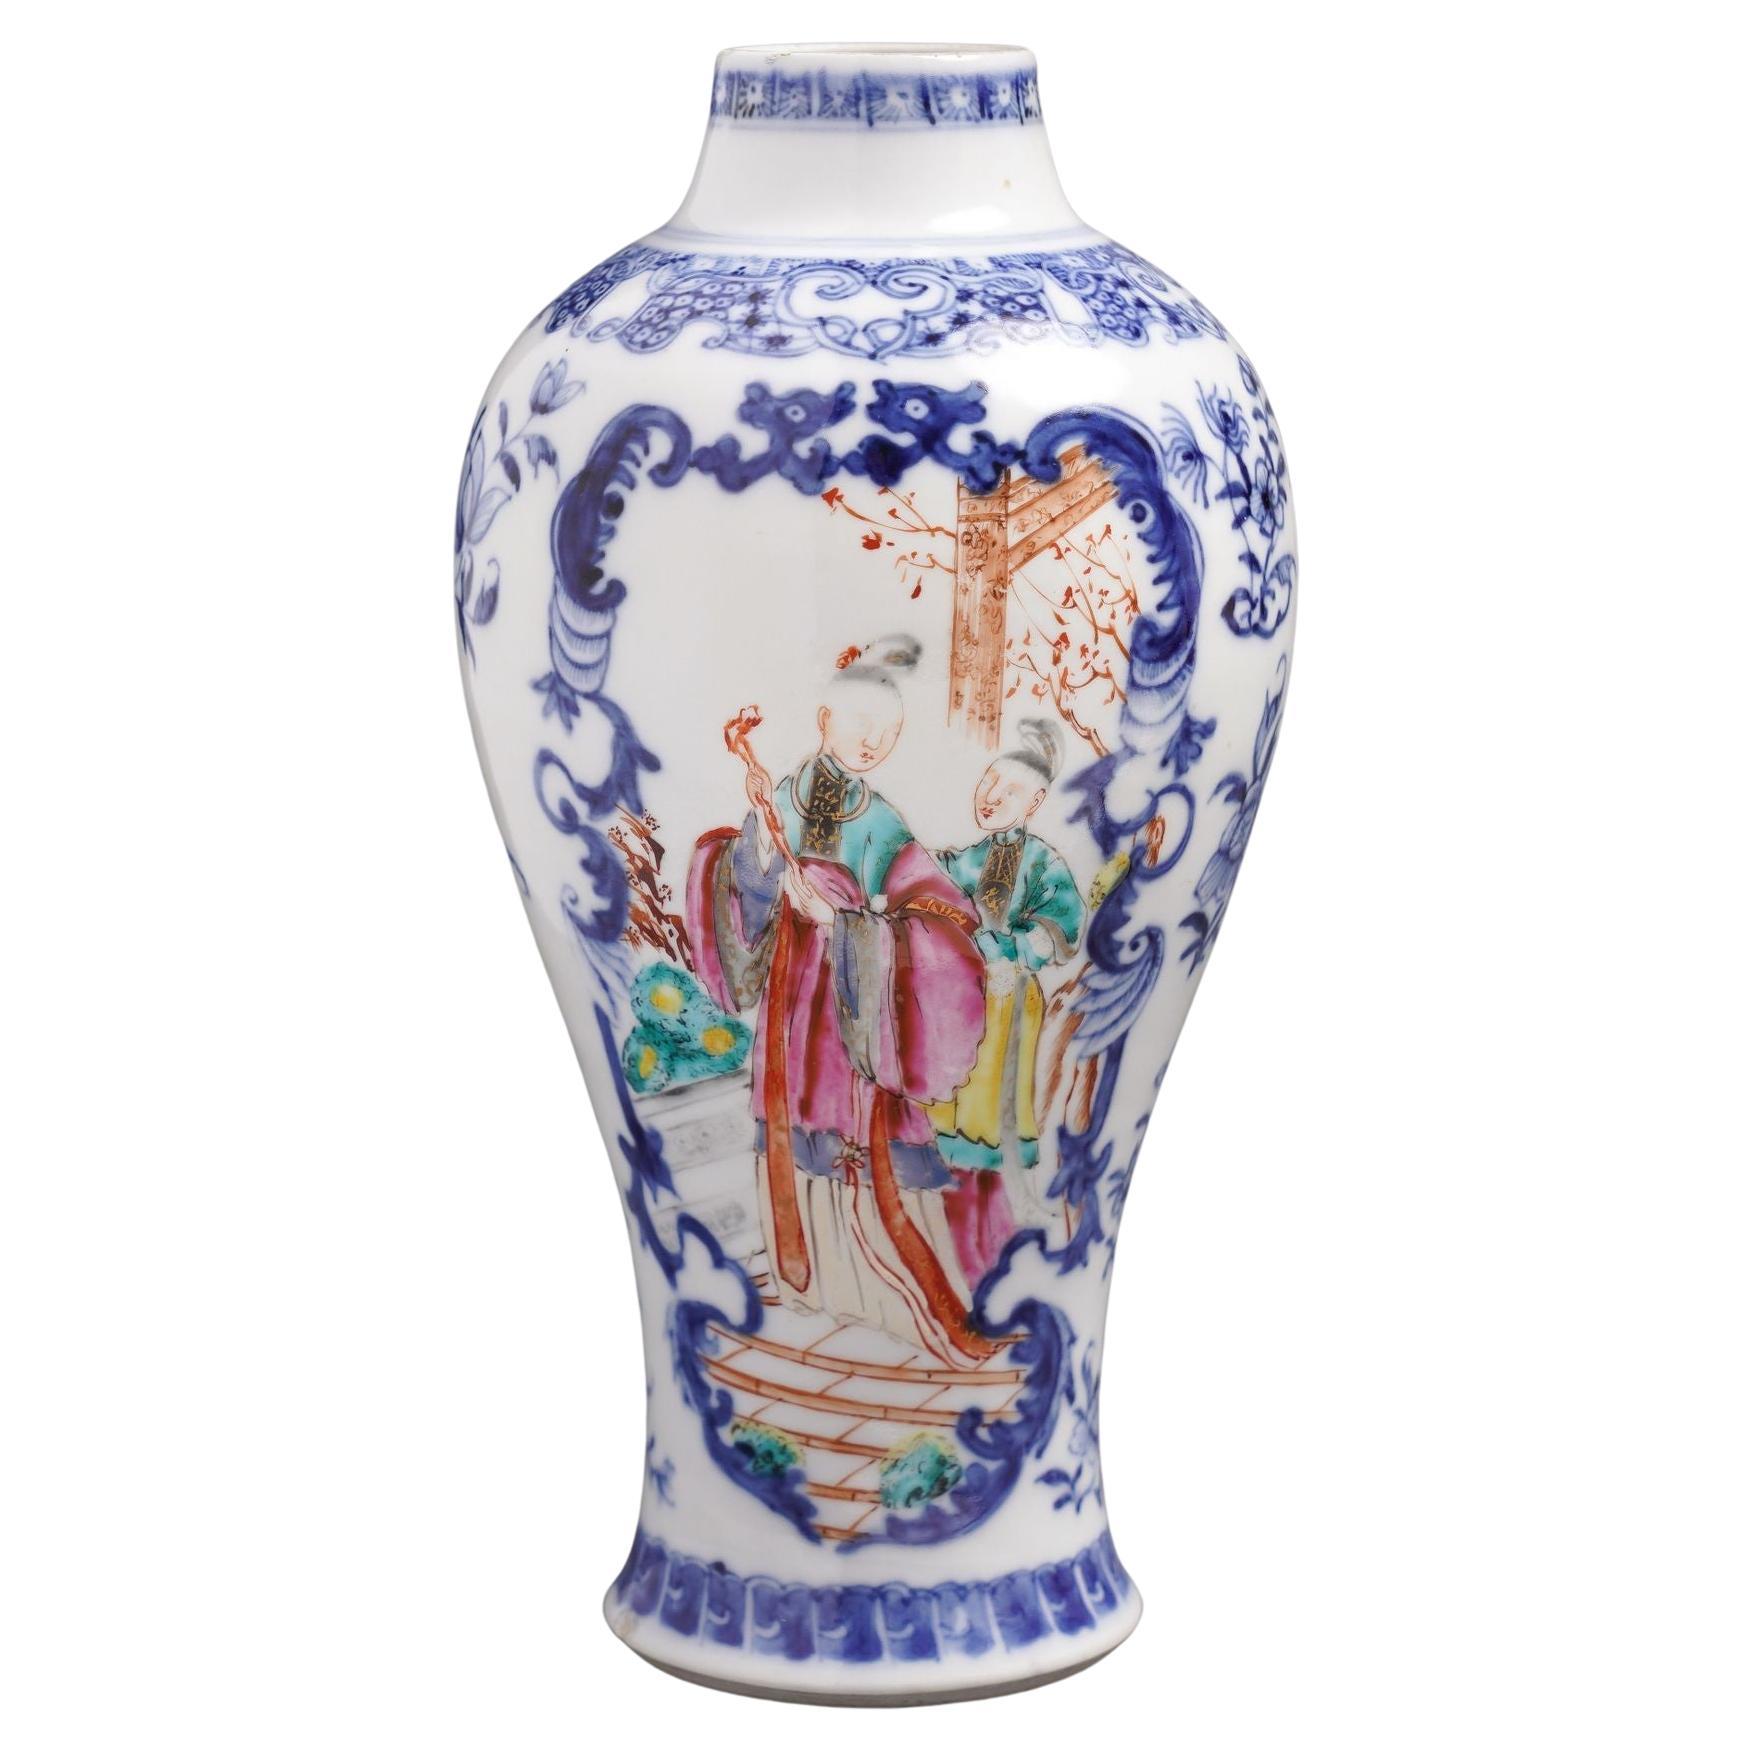 Chinesische Export-Vase in Balusterform als garniture mit figürlichen Szenen, um 1780